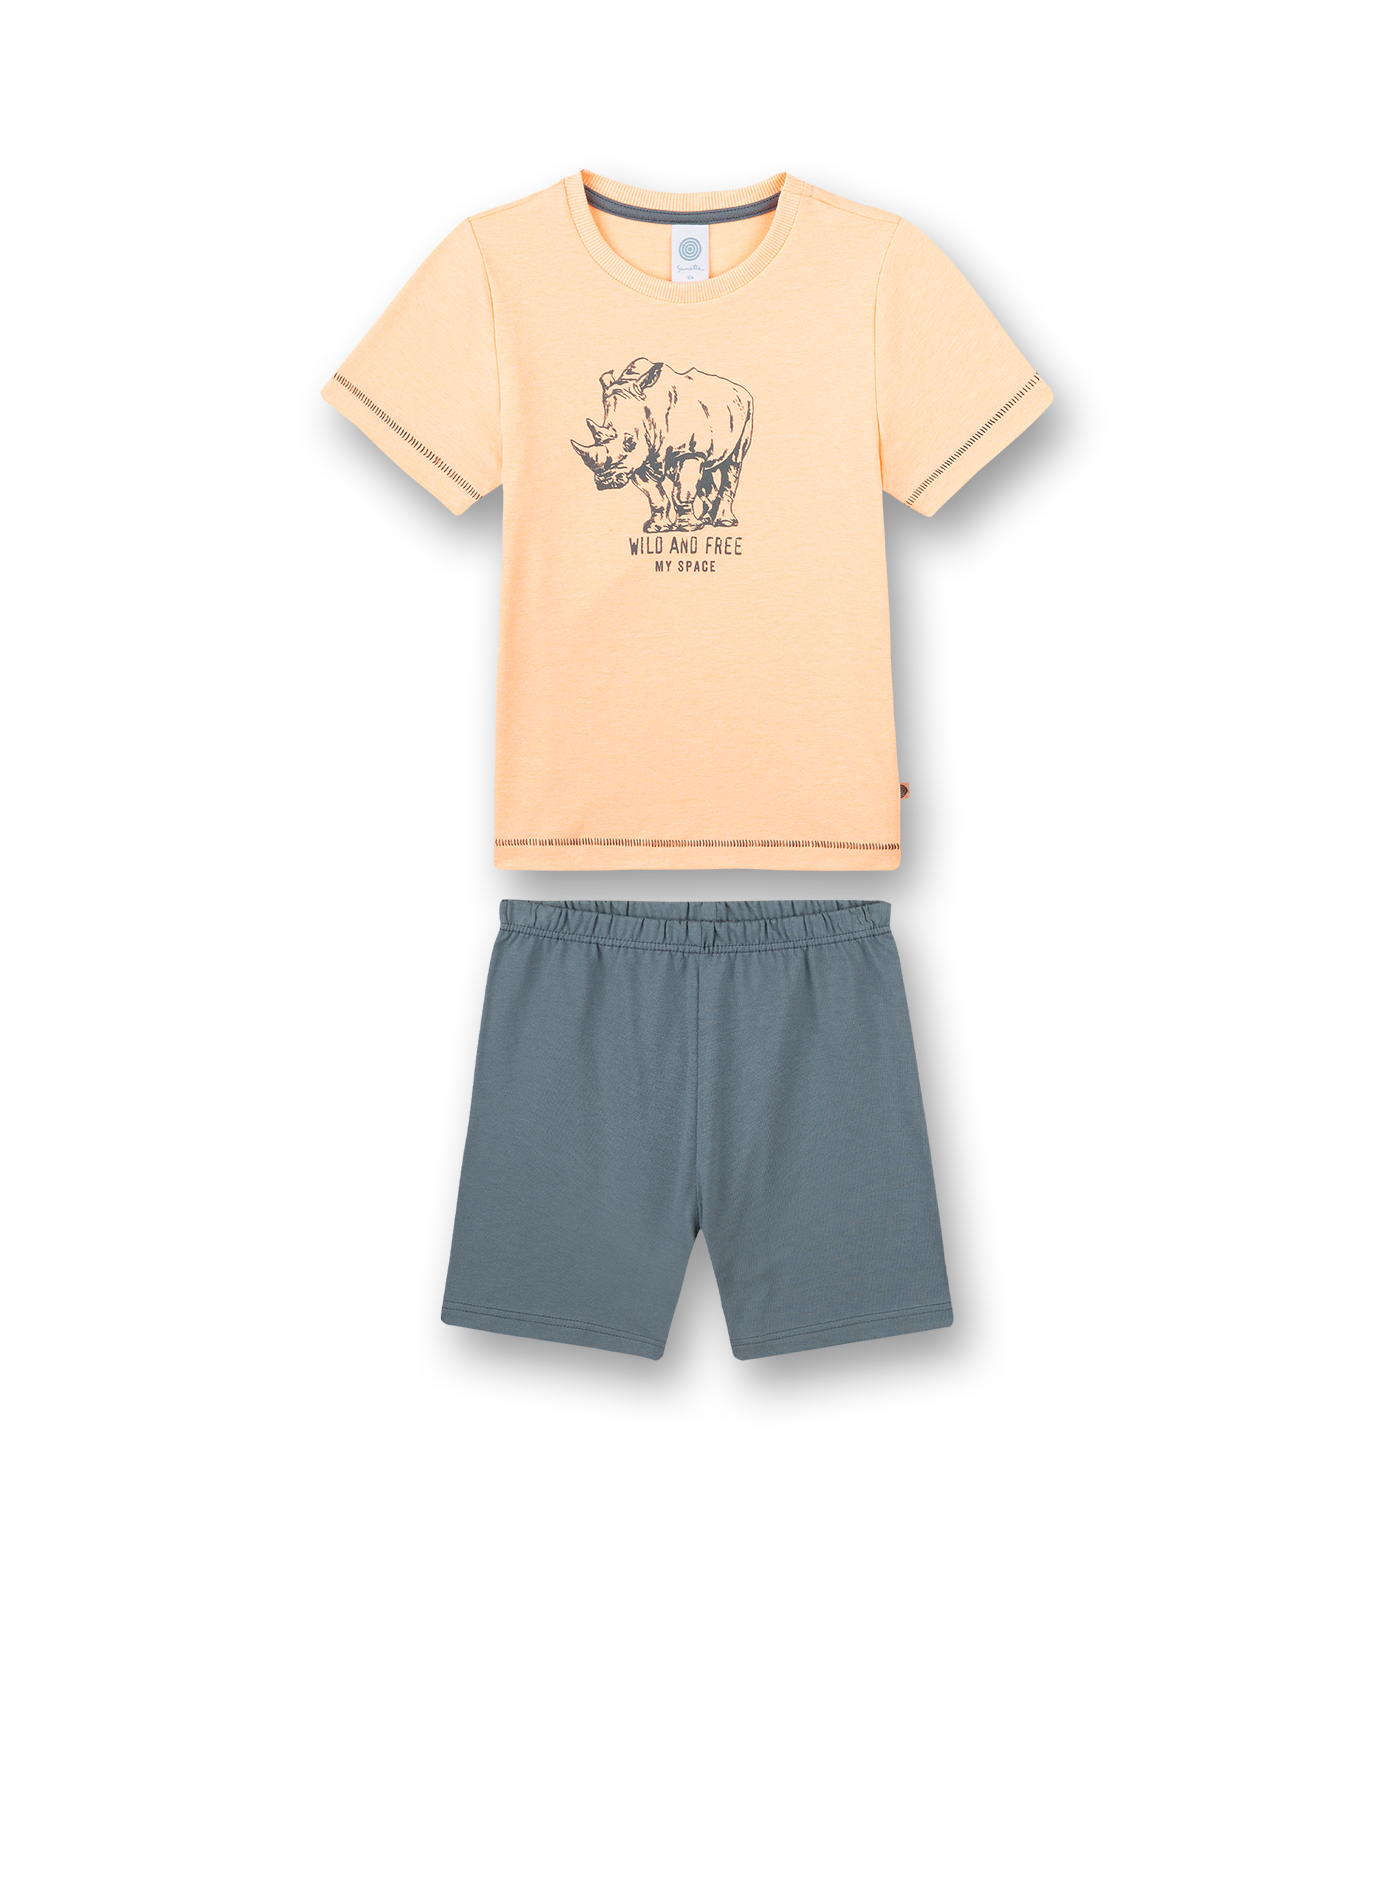 Jungen-Schlafanzug kurz Orange Wild at Heart